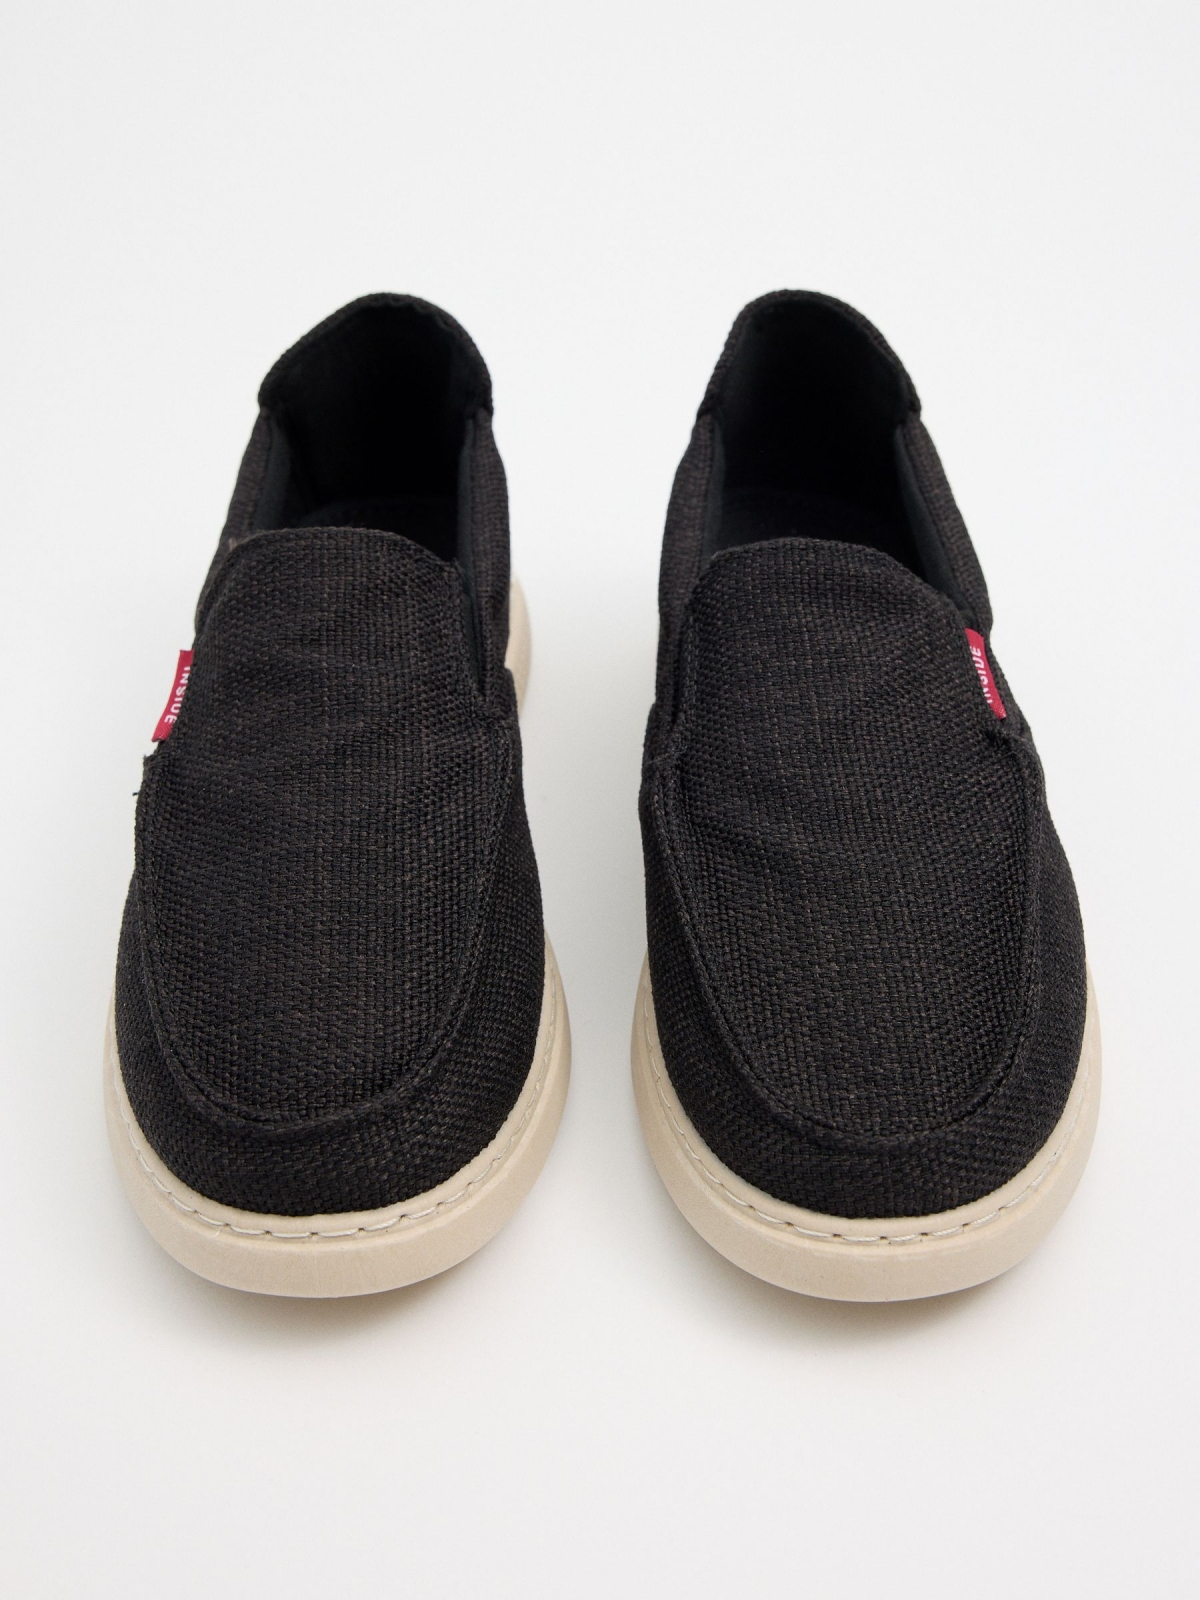 Black canvas shoe | Men's Sneakers | INSIDE